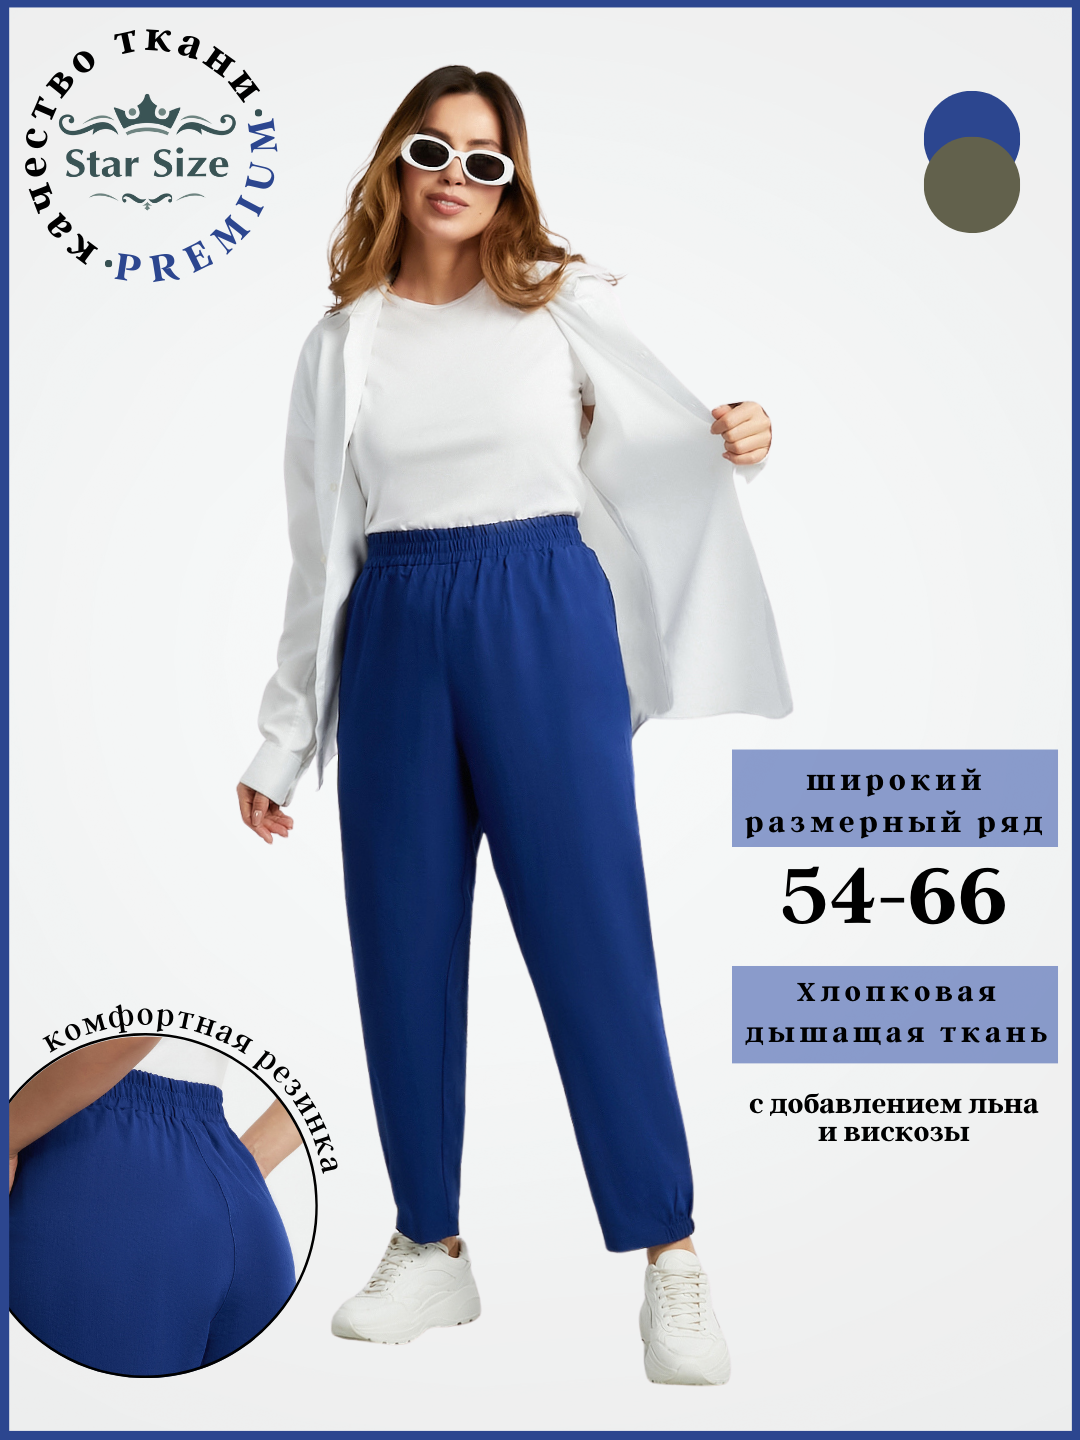 Брюки спортивные Star Size брюки летние женские больших размеров, размер 60, синий